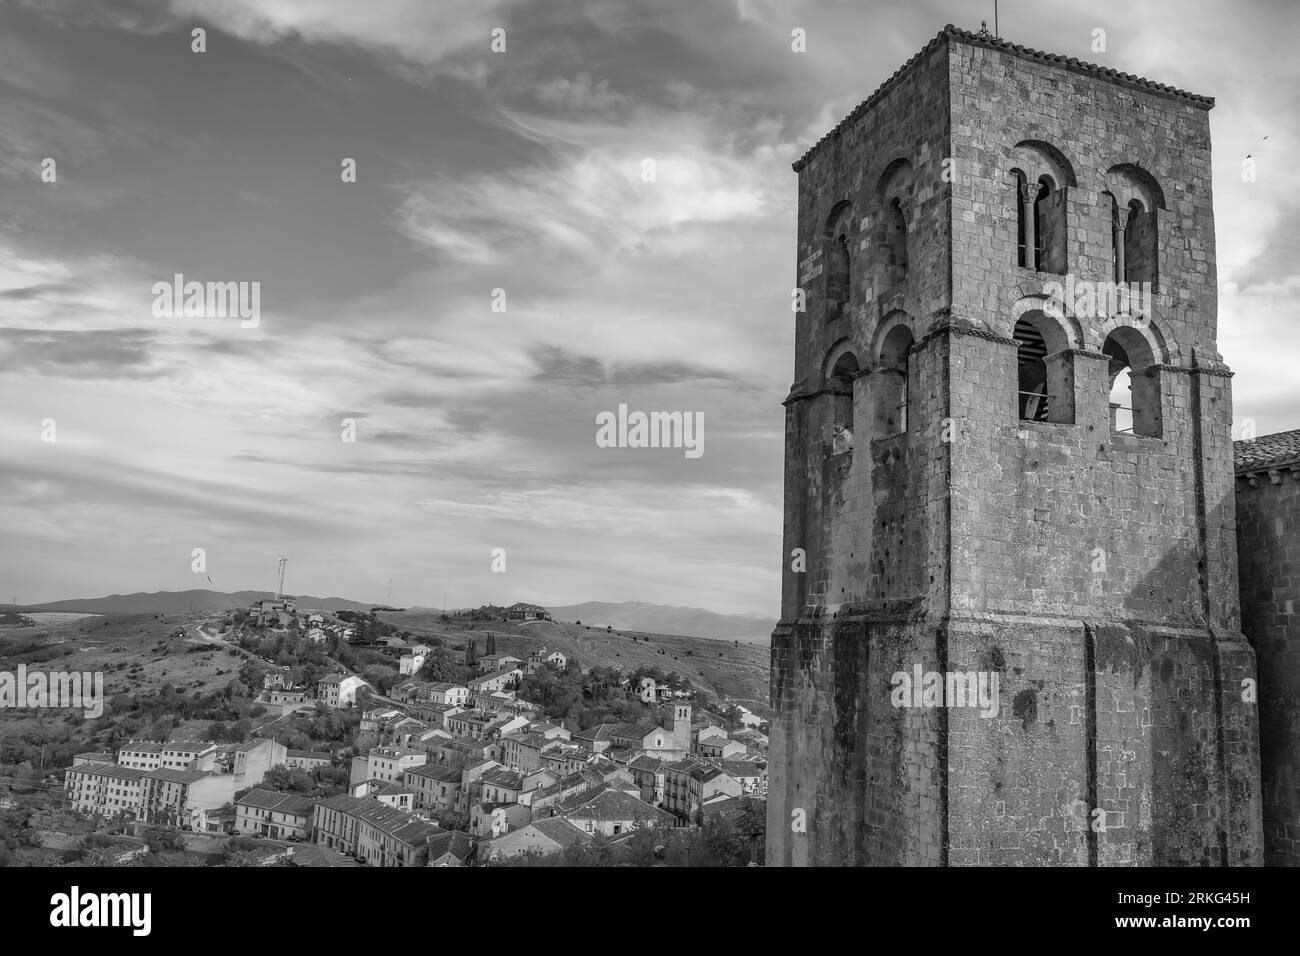 Église Sepulveda de San Salvador au premier plan et le village médiéval en arrière-plan. Photographie prise en noir et blanc. Espagne Banque D'Images